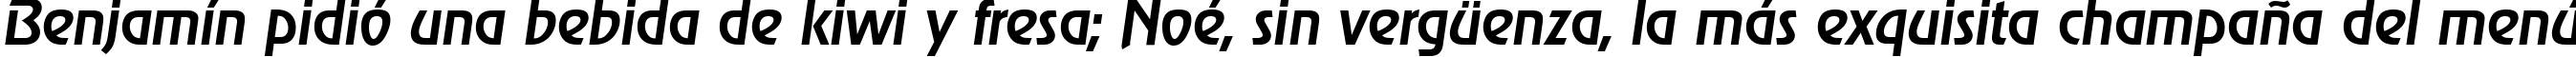 Пример написания шрифтом OnStageSerial-Medium-Italic текста на испанском